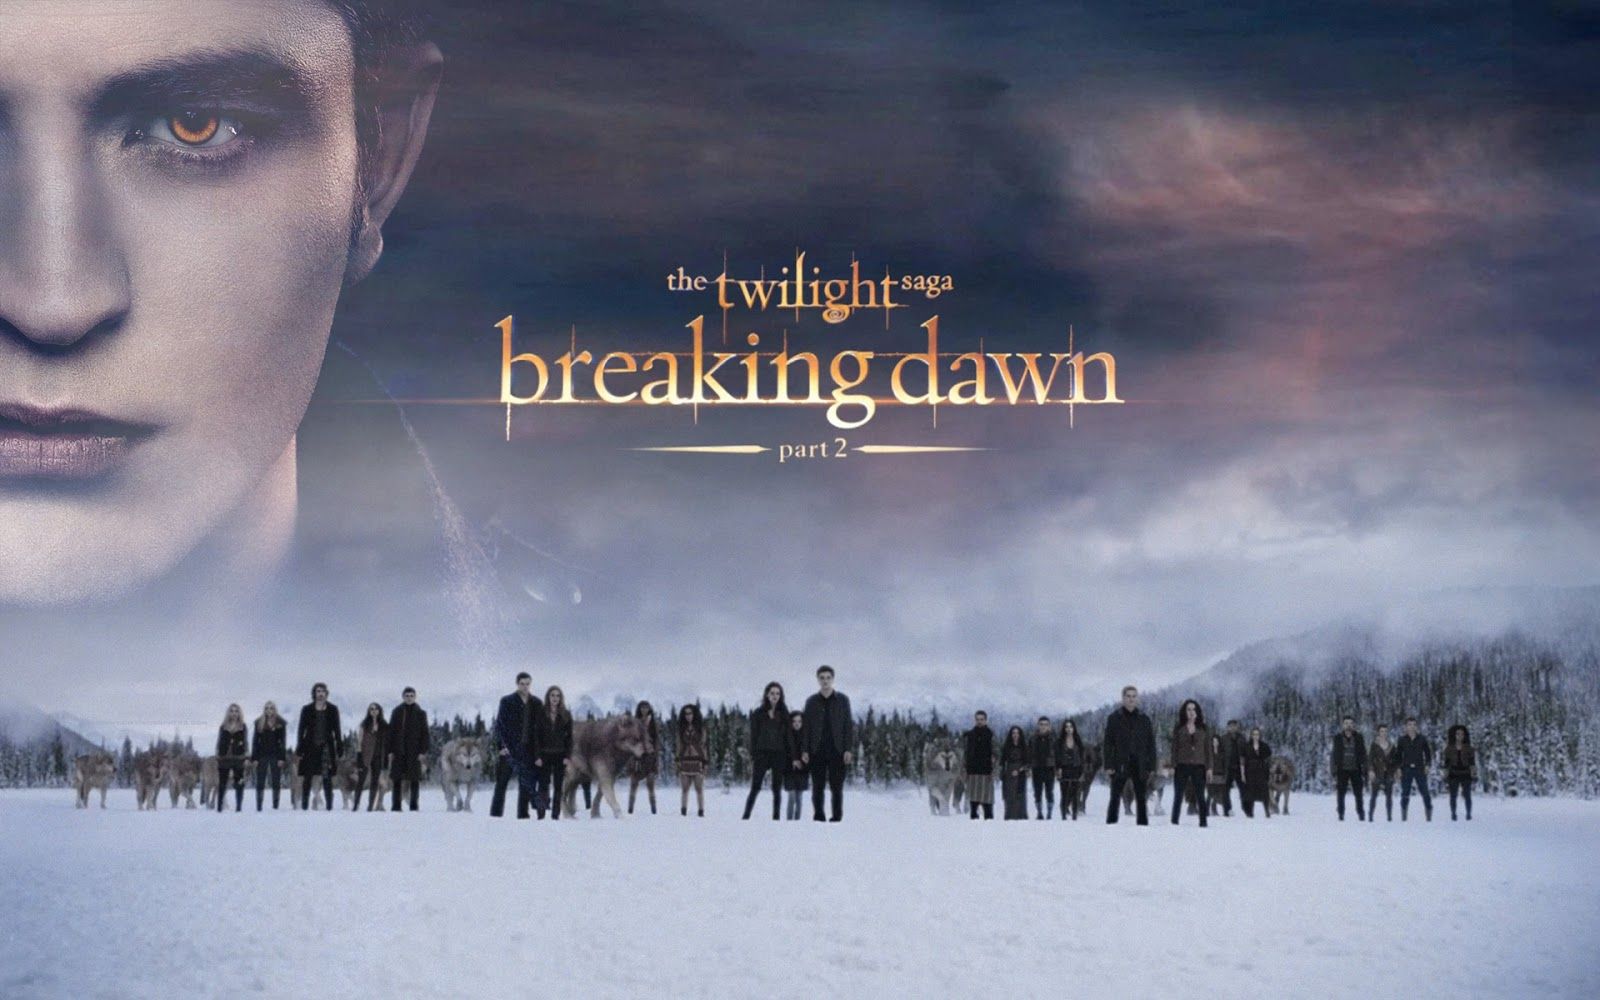 watch twilight breaking dawn part 2 online free megavideo